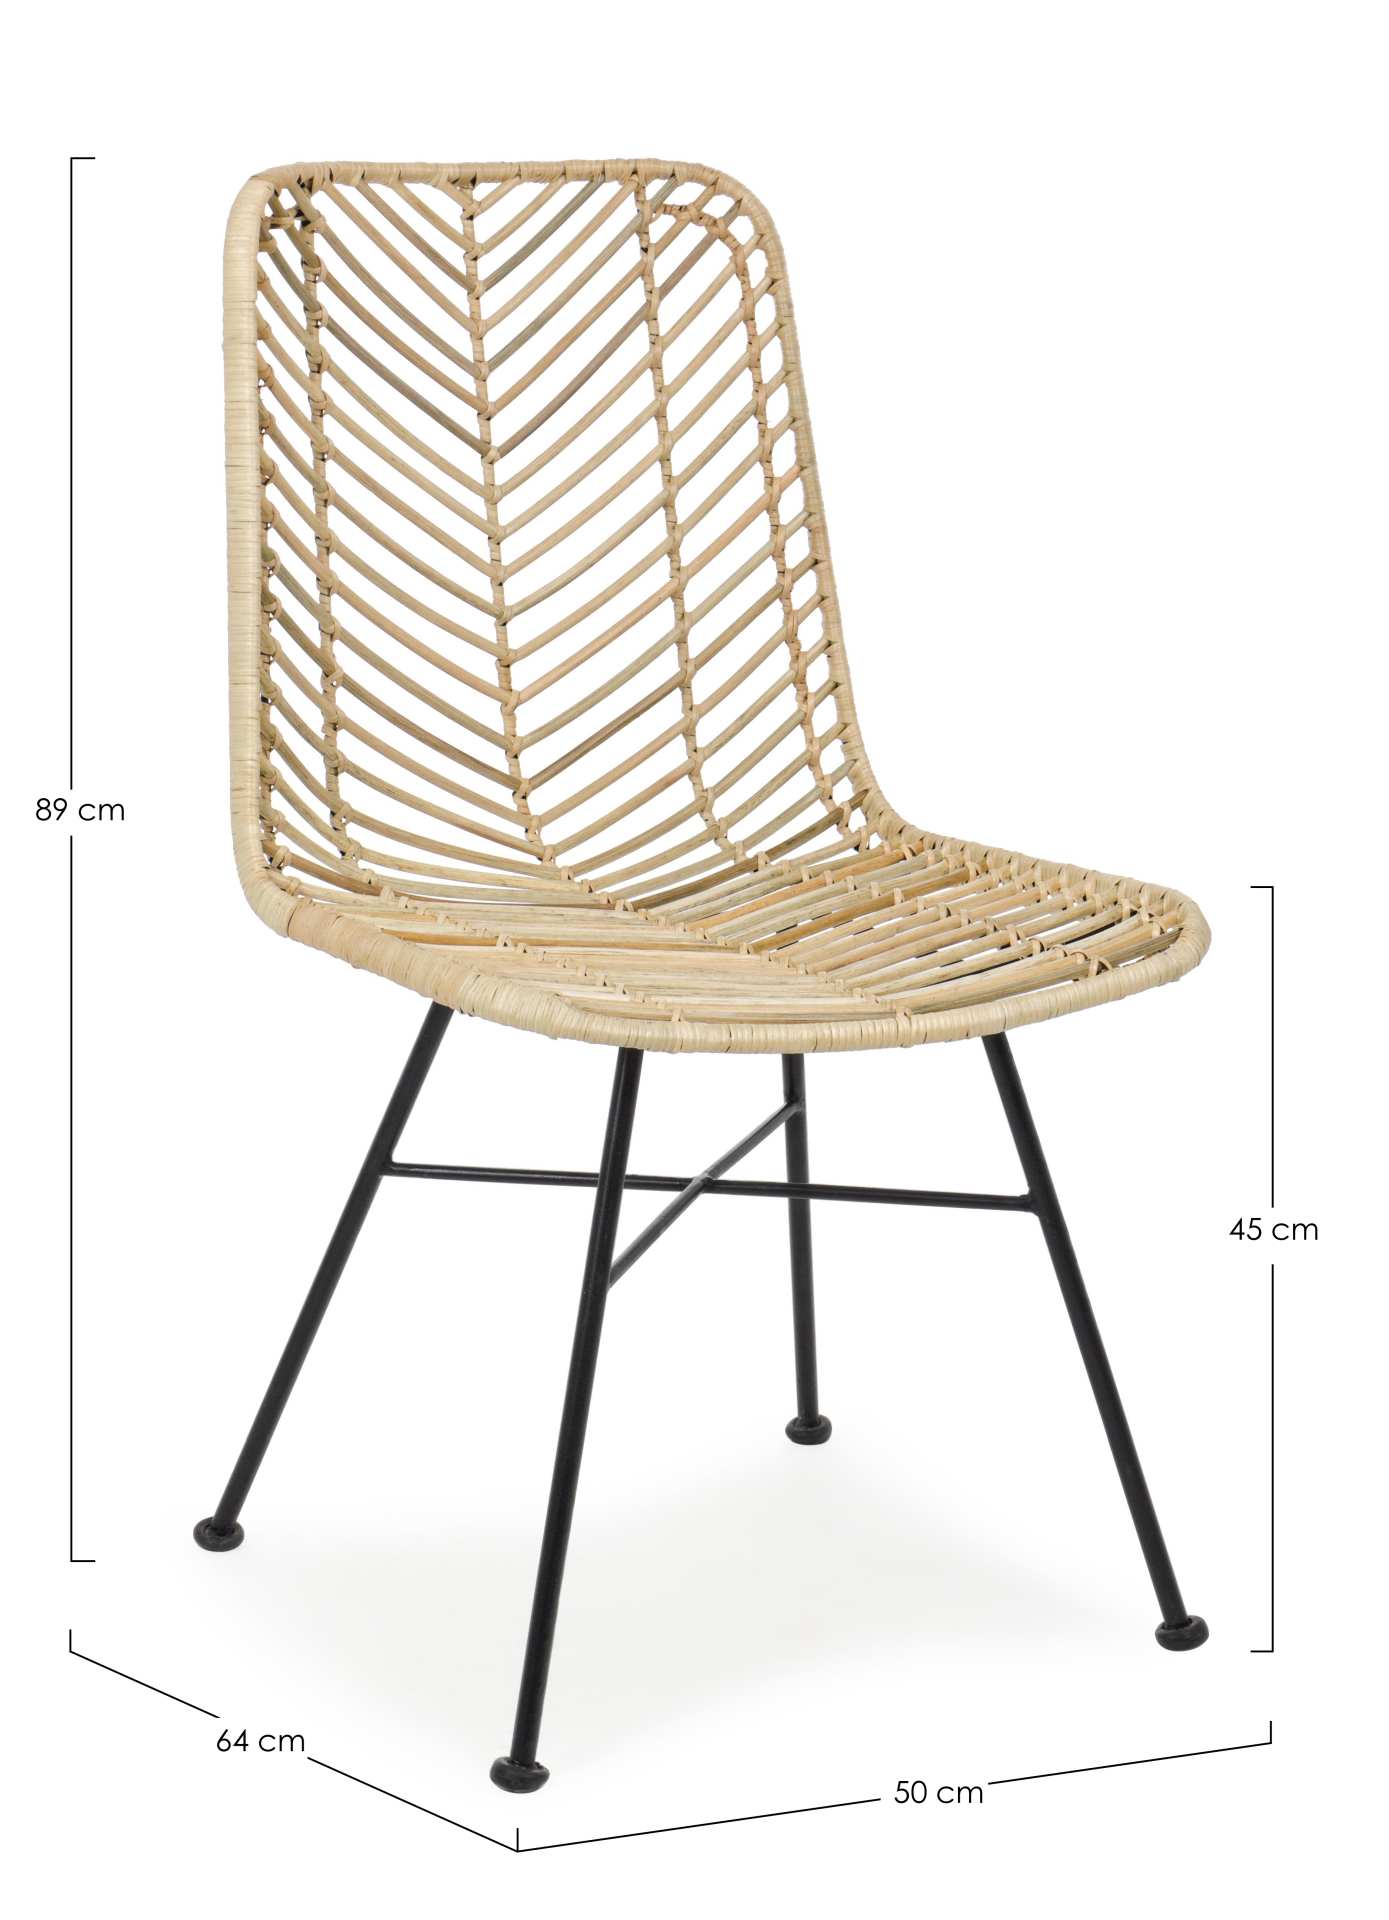 Der Stuhl Lorena überzeugt mit seinem modernem aber auch besonderem Design. Gefertigt wurde der Stuhl aus Rattan, welcher einen natürlichen Farbton besitzt. Das Gestell ist aus Metall und ist Schwarz. Die Sitzhöhe beträgt 45 cm.